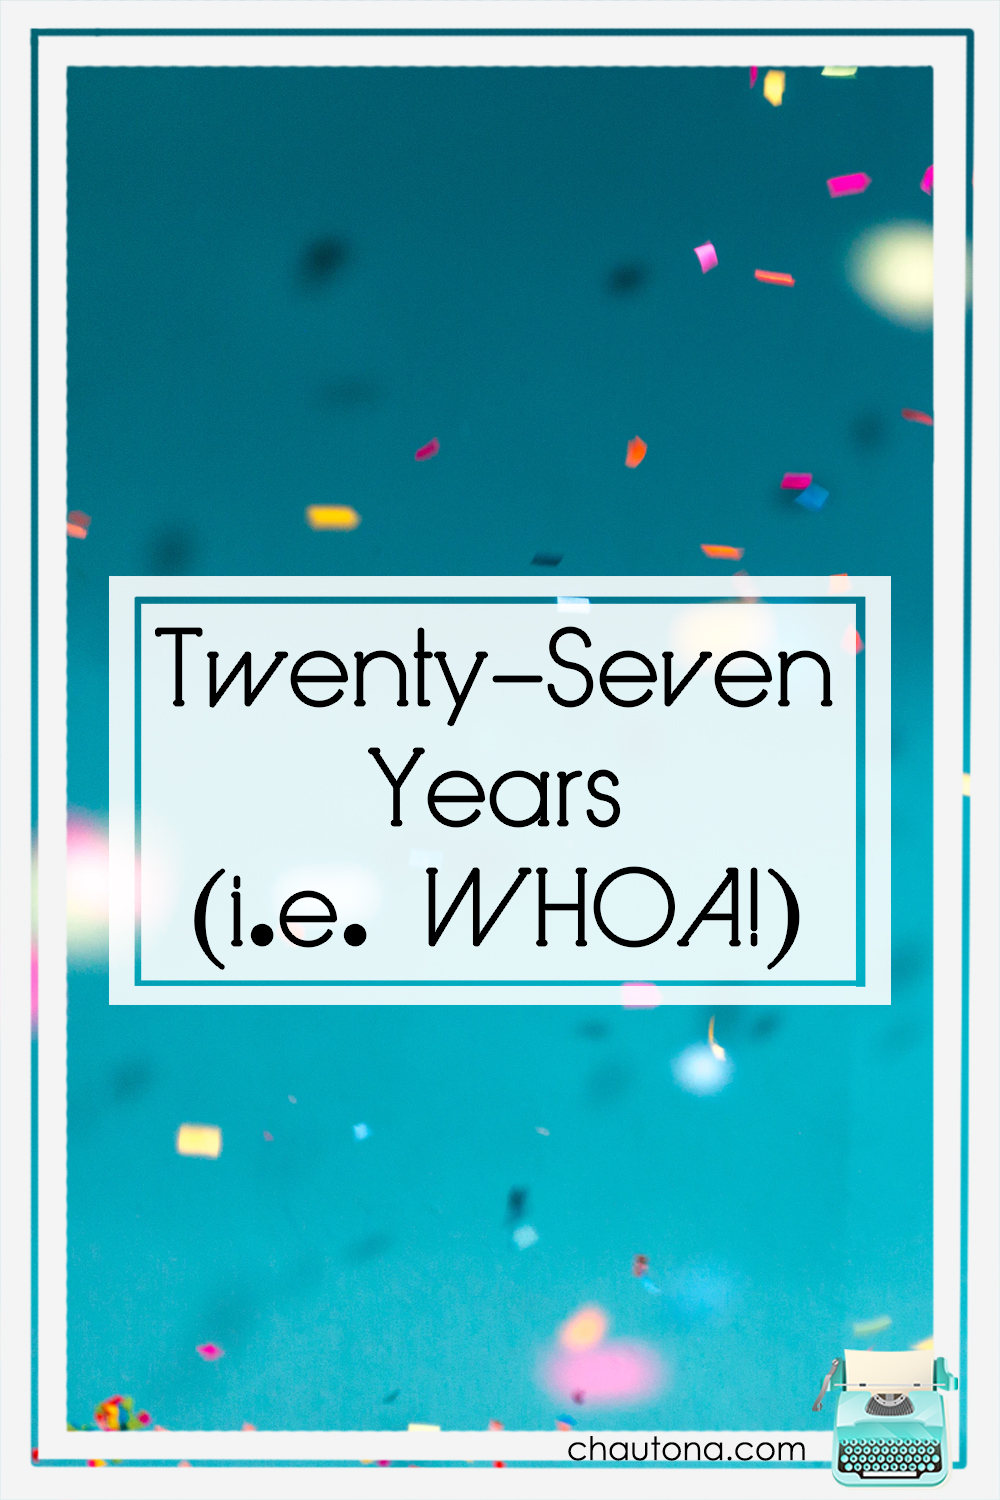 twent6-seven years